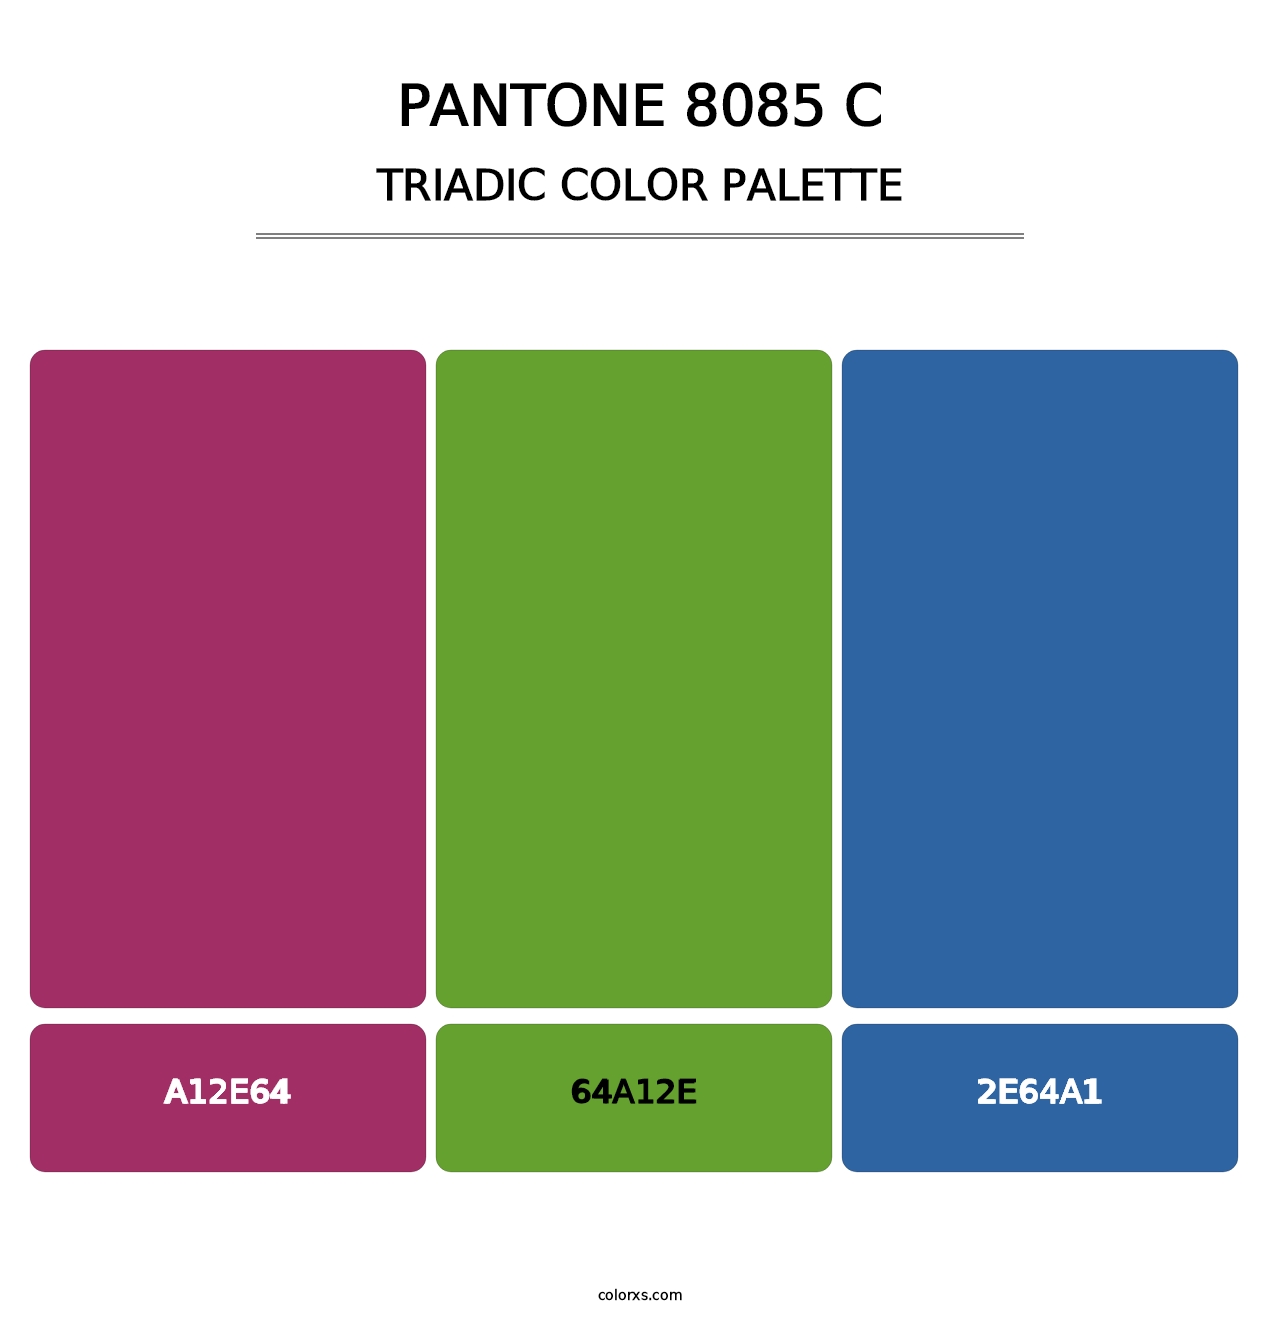 PANTONE 8085 C - Triadic Color Palette